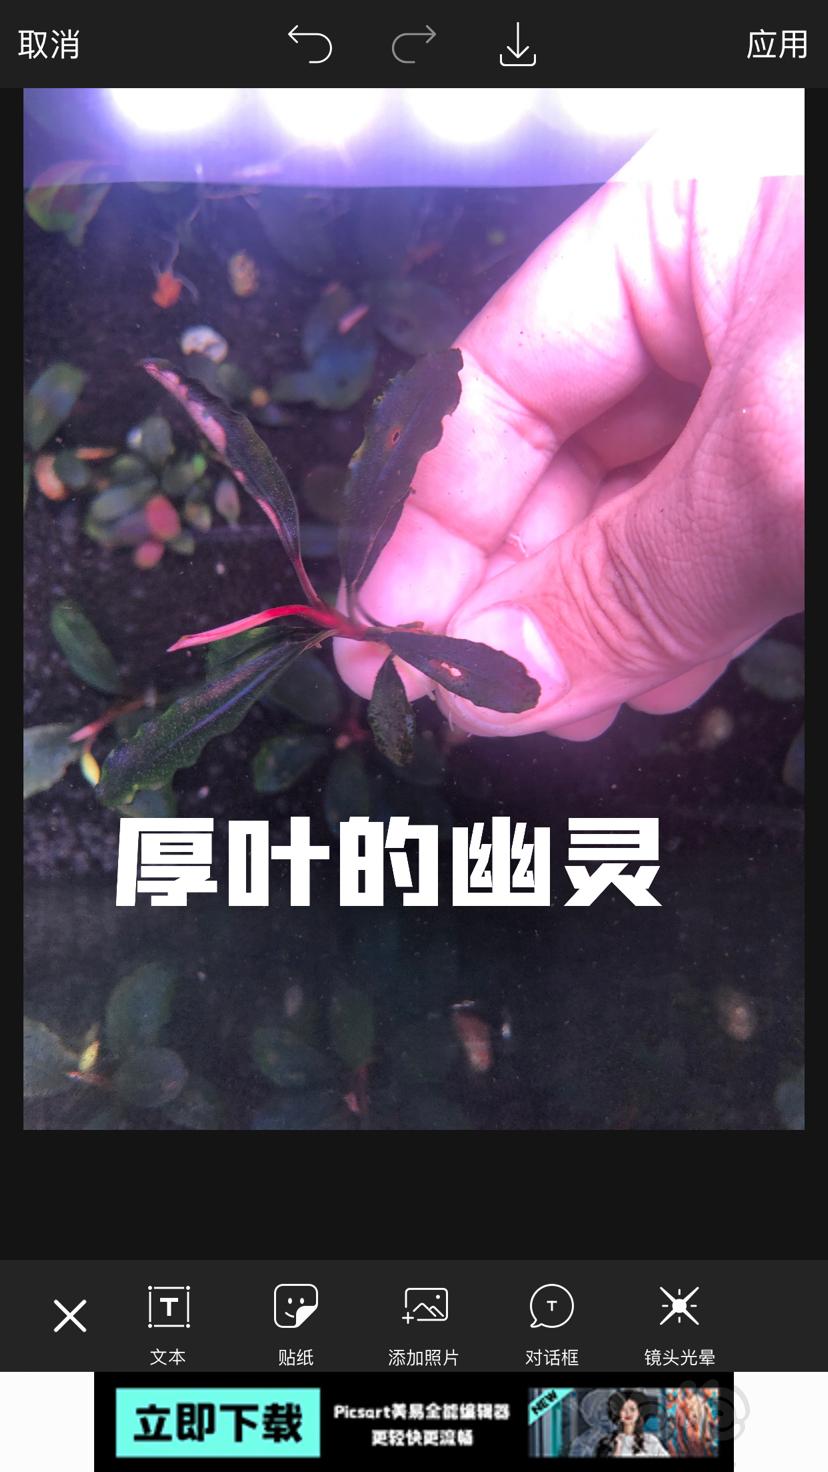 【辣椒榕】北京周边出点11蓝和老货-图5